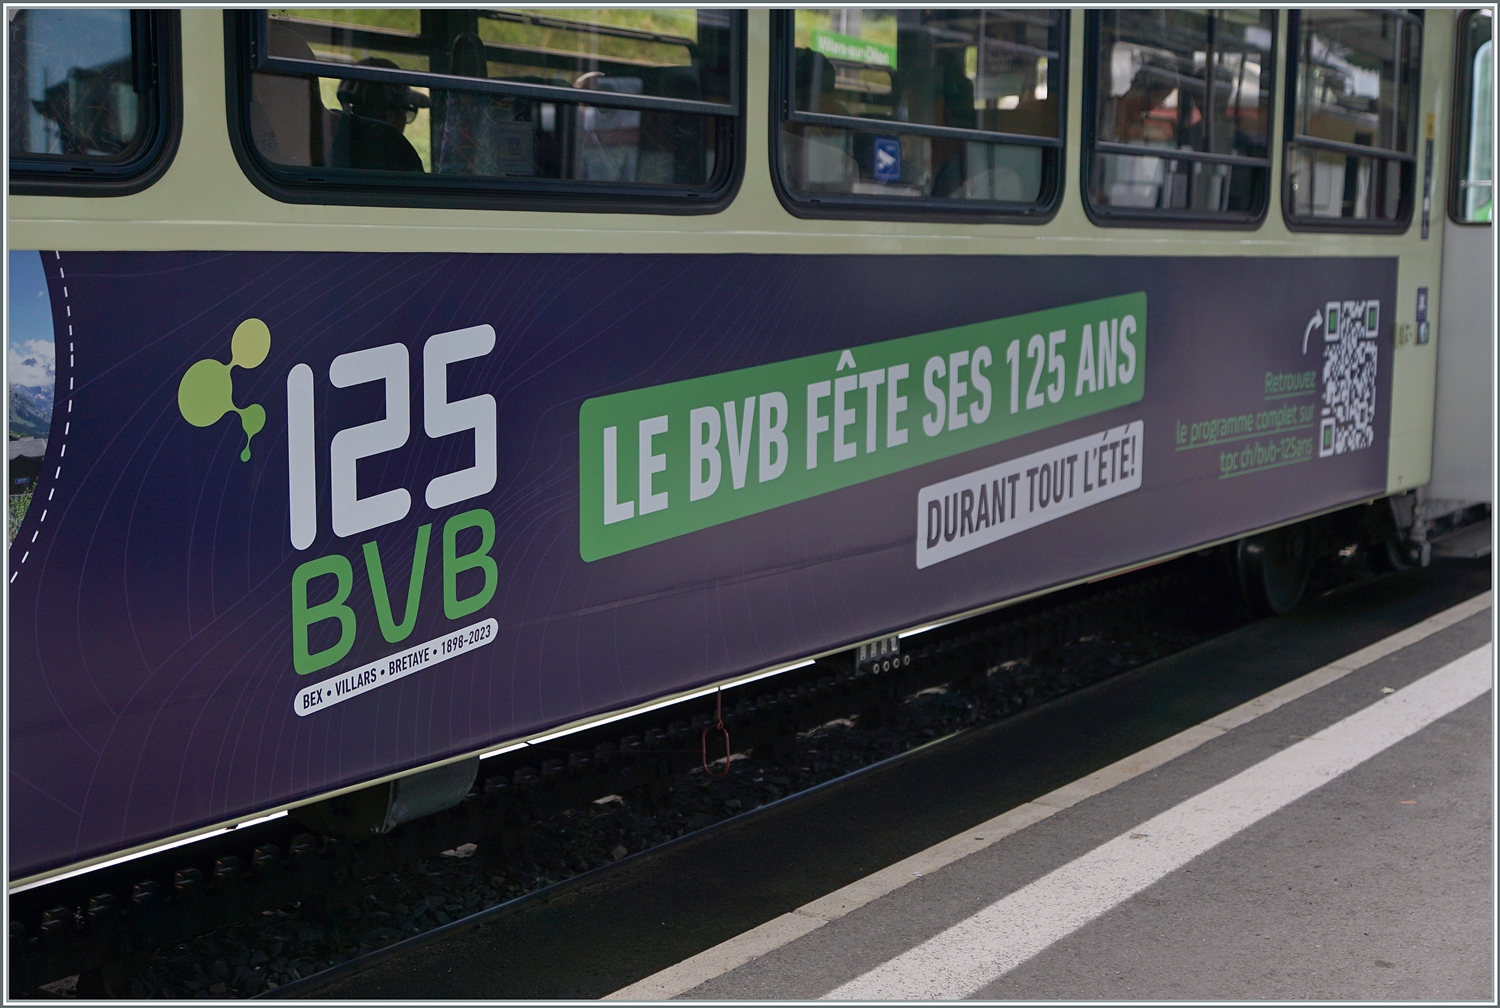 125 Jahre BVB - dazu bot die BVB bzw. cie TPC und B-C ein interessantes Sommer Program an.

Villars, den 19. Aug. 2023